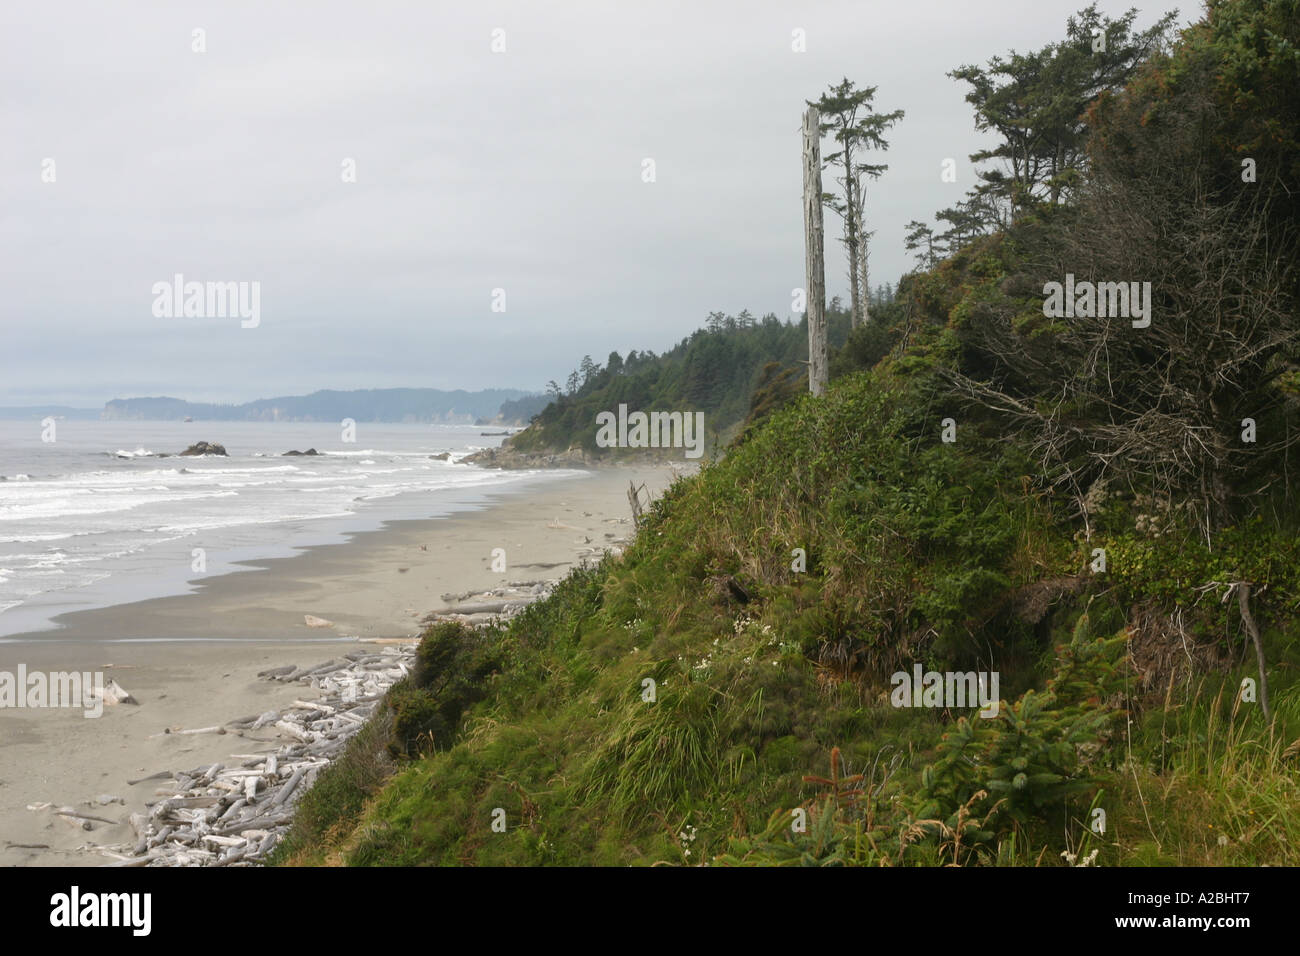 Die windgepeitschten Bäume und Sträucher des zweiten Strand Landzungen kontrastieren mit dem entfernterer Wellen, Treibholz, Strand und "Heuhaufen". Stockfoto